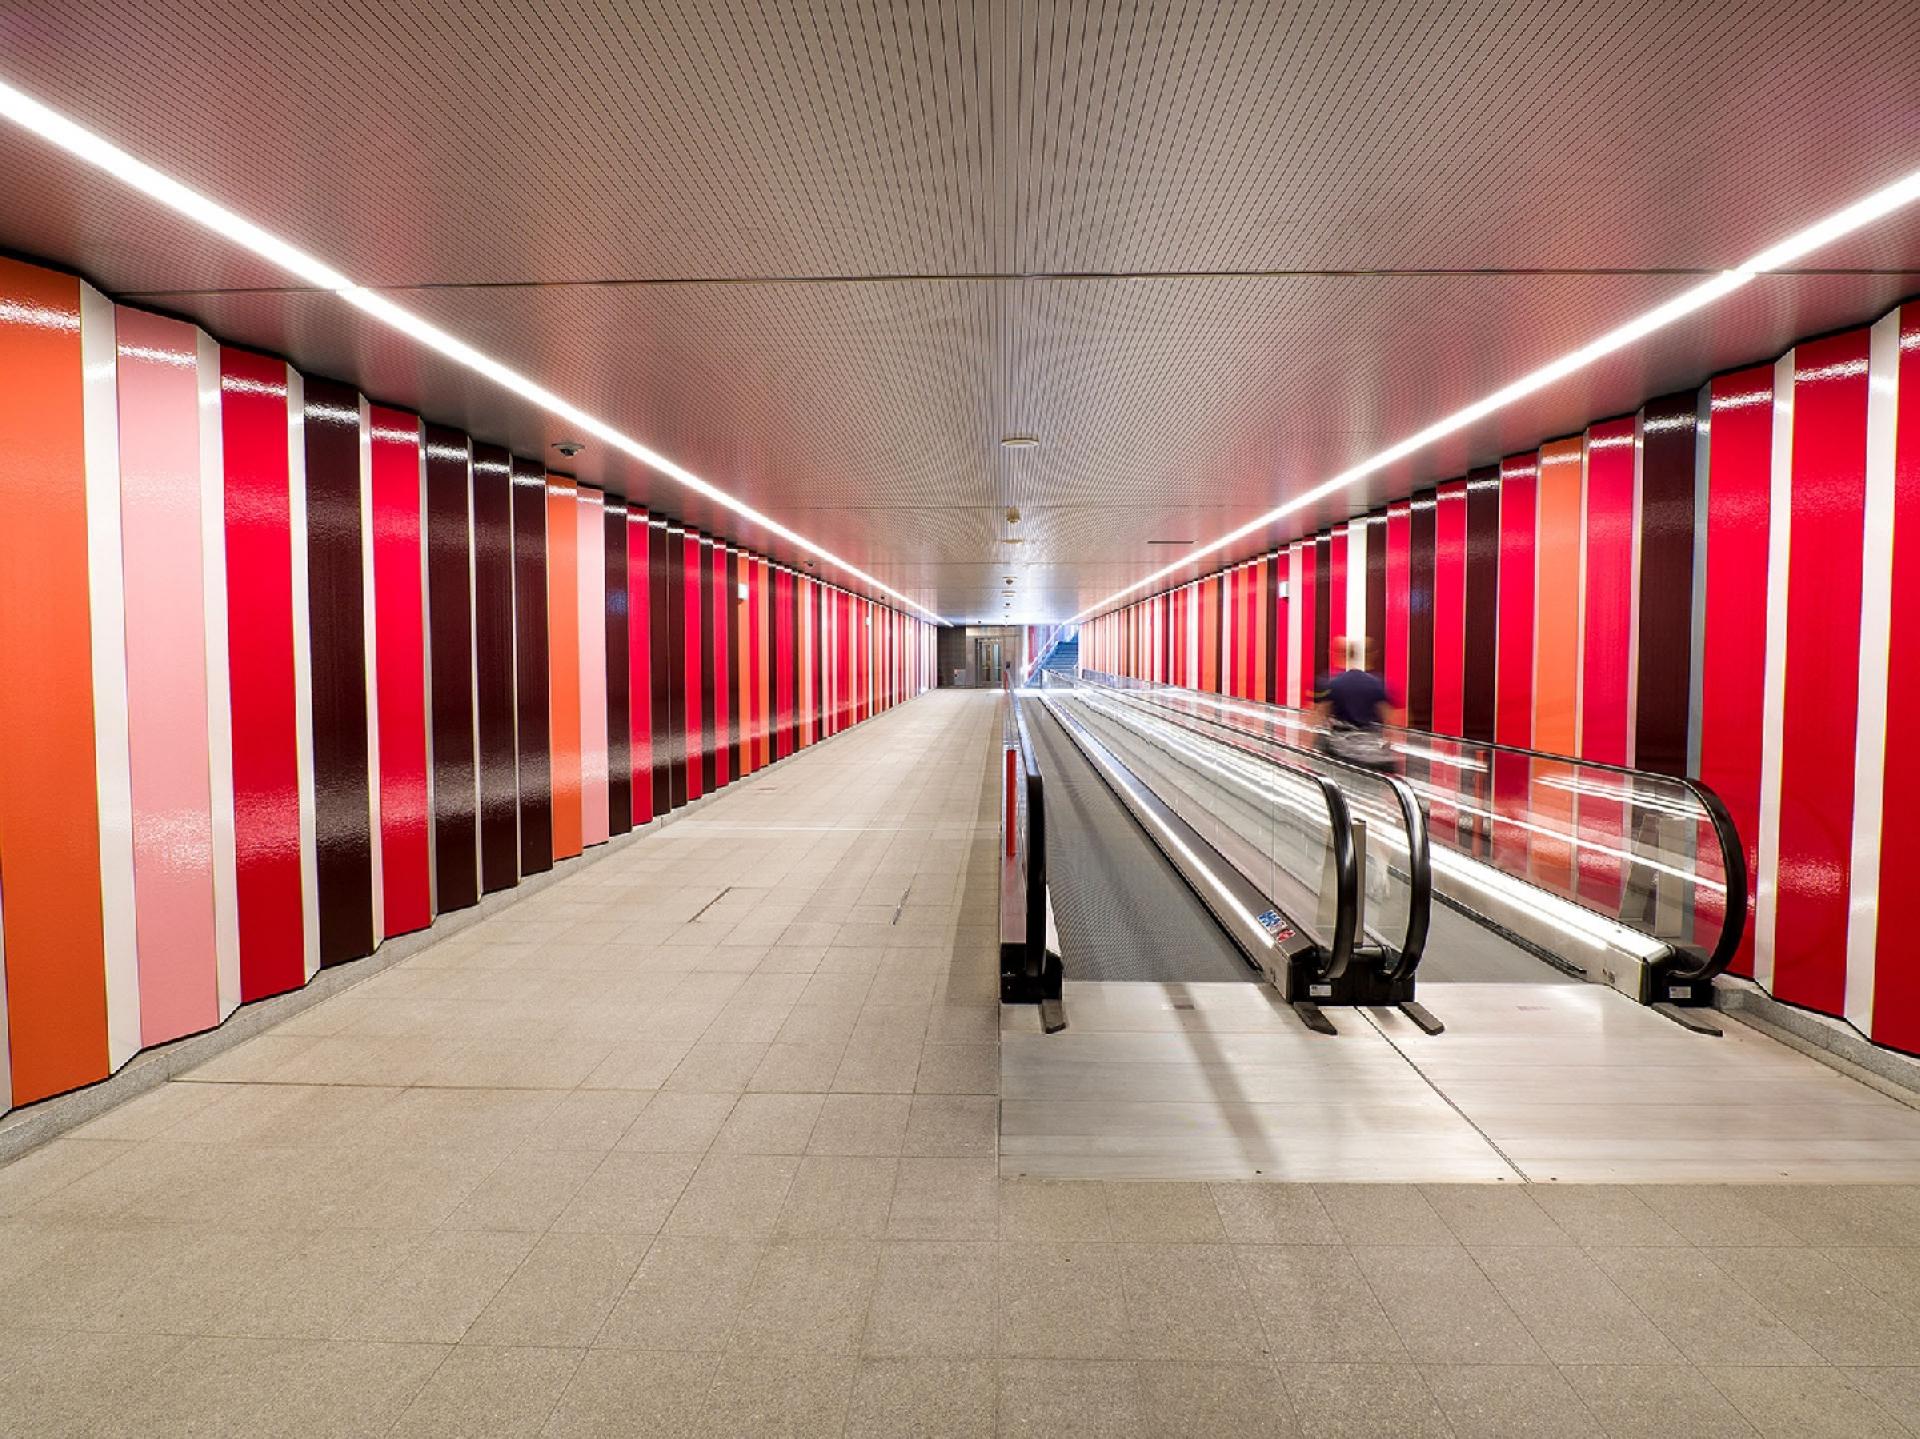 Skærmtegl kan ikke kun finde anvendelse udendørs. Her et kig ind i Nordhavn Metro Station, hvor de rejsende kan nyde det flotte farvespil. Foto: C2 Elements